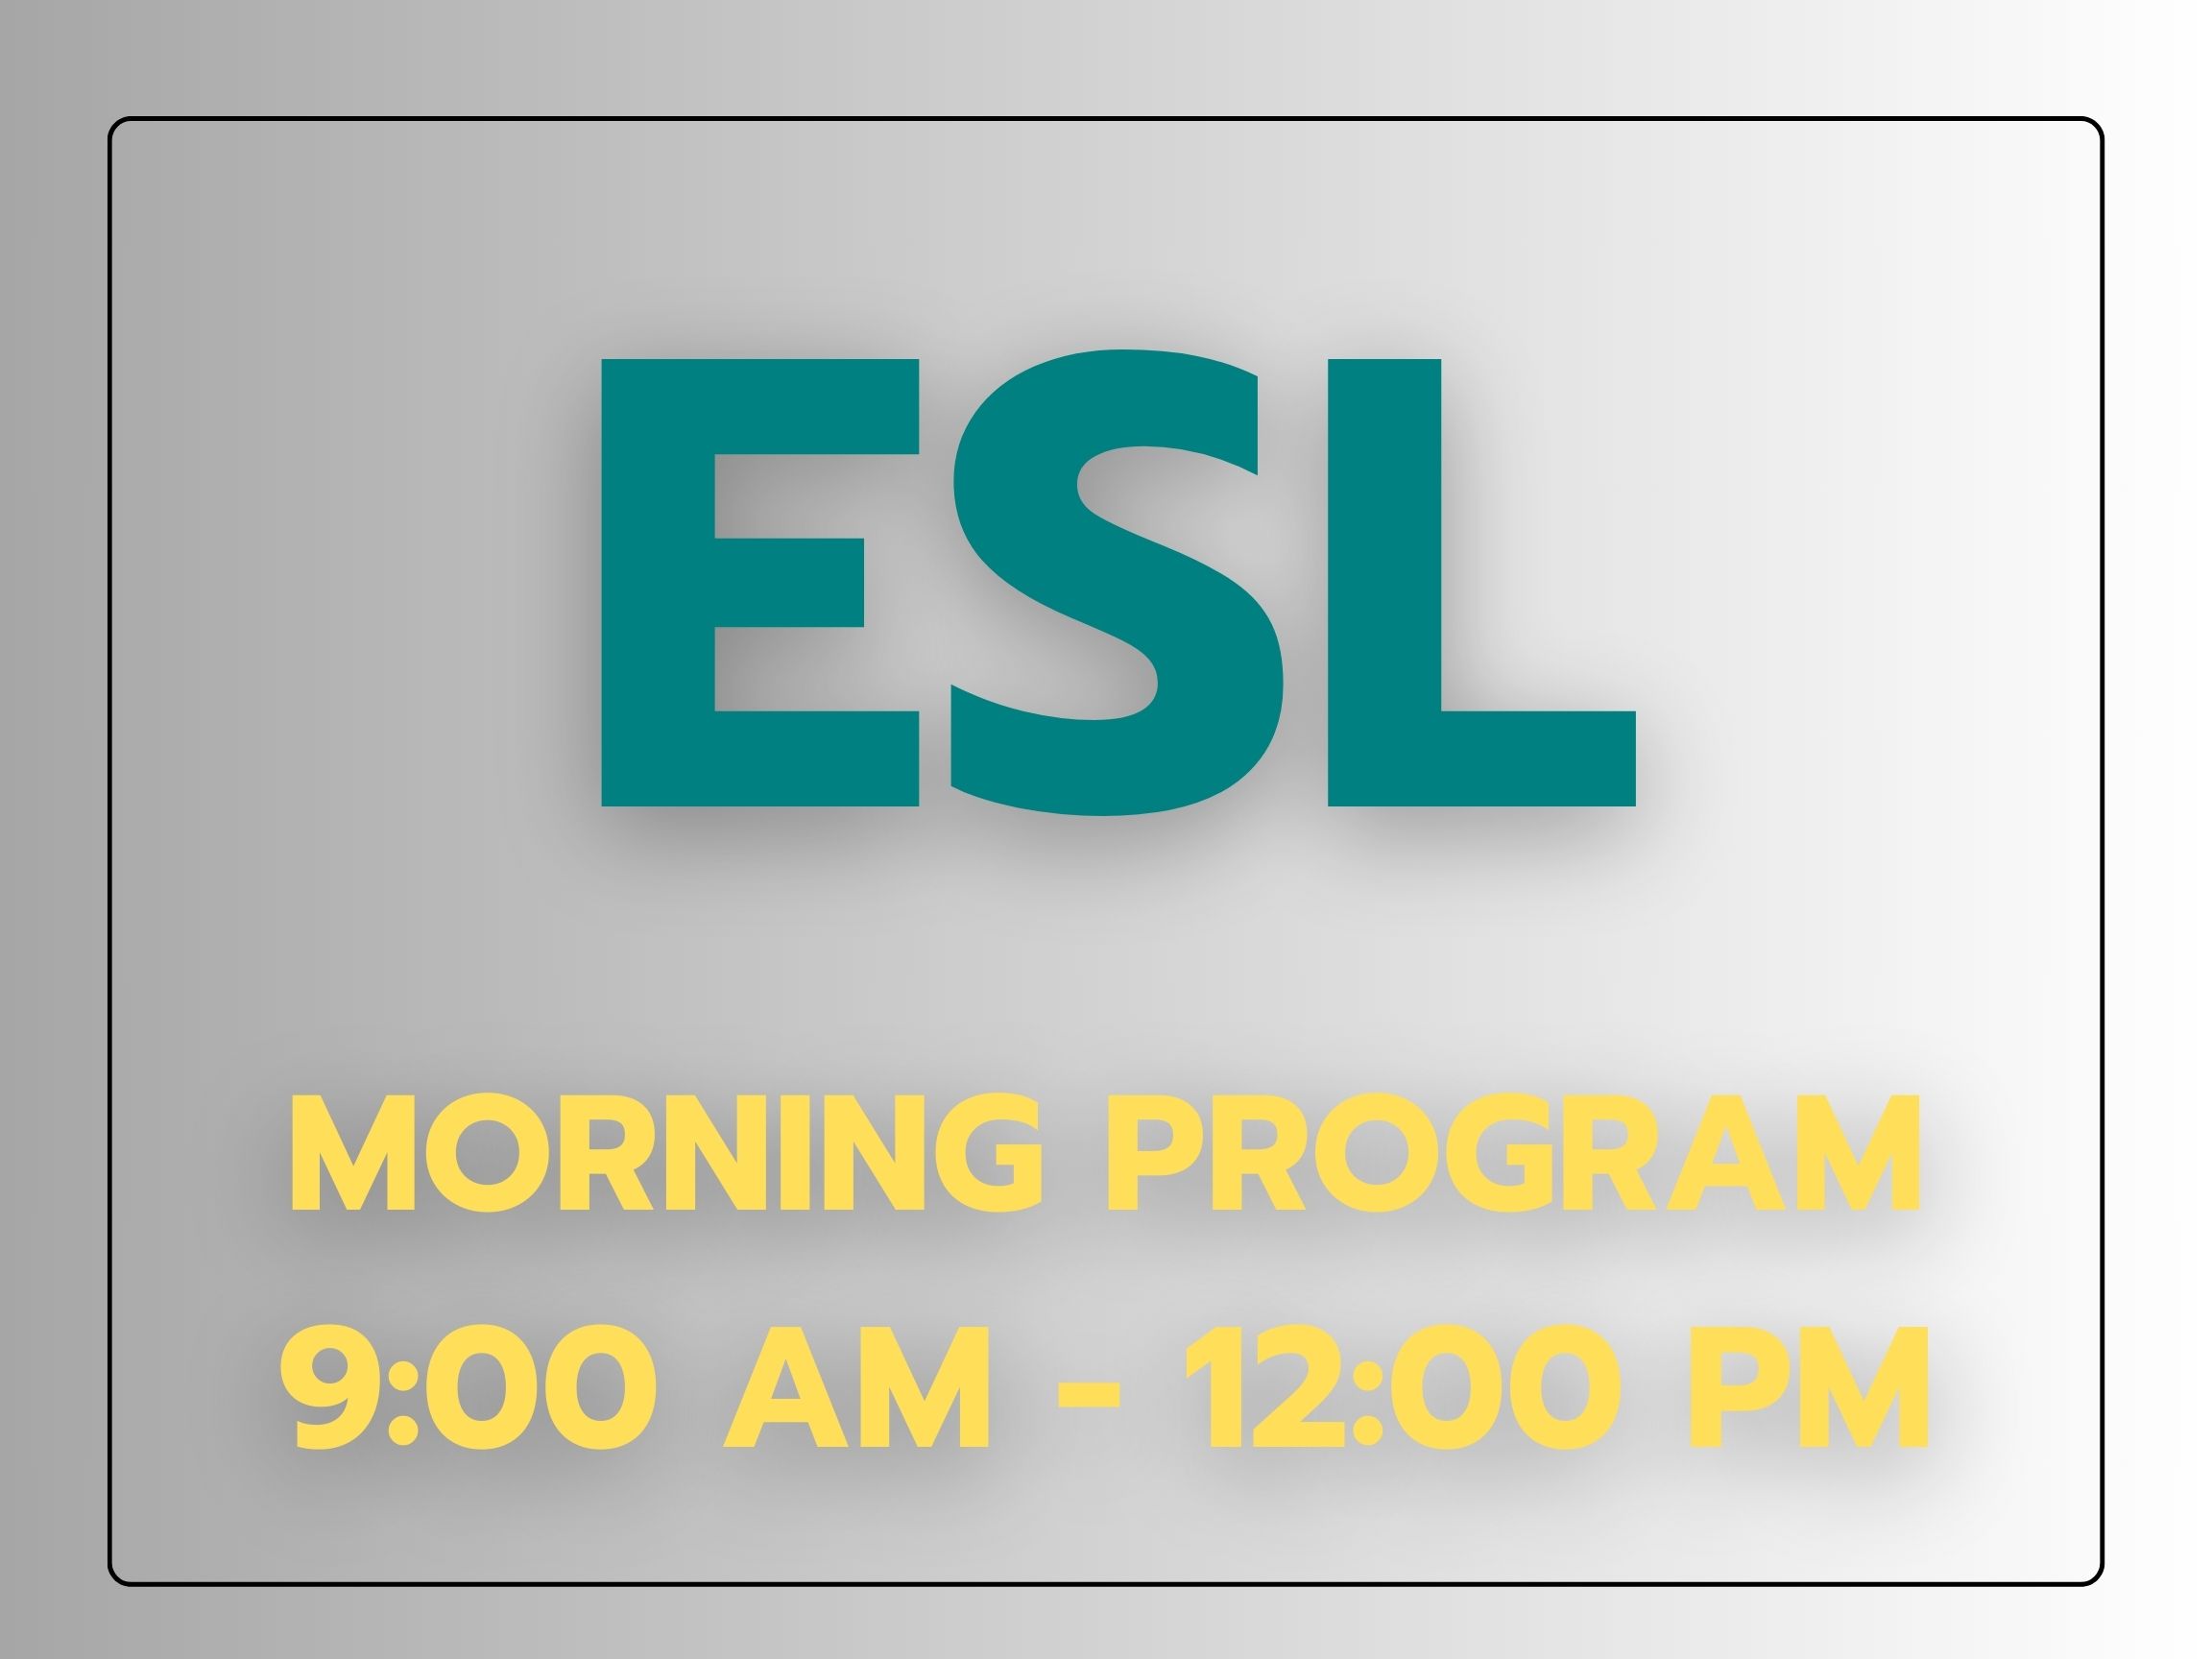 ESL morning program information